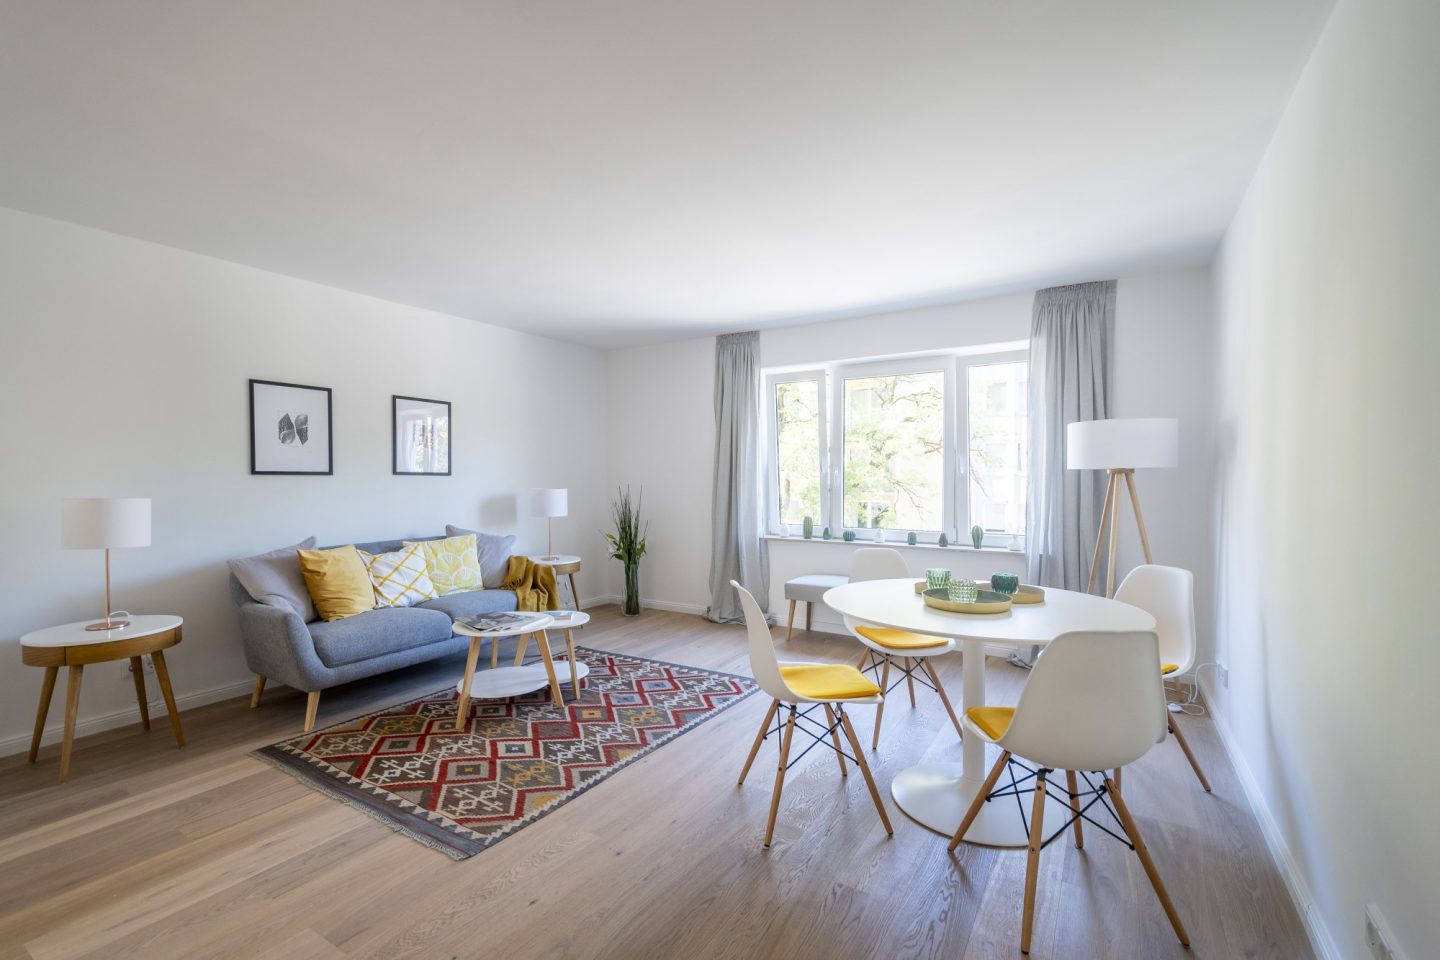 Immobilienfotografie | Home Staging | Vorher/Nachher | München | Offenblende